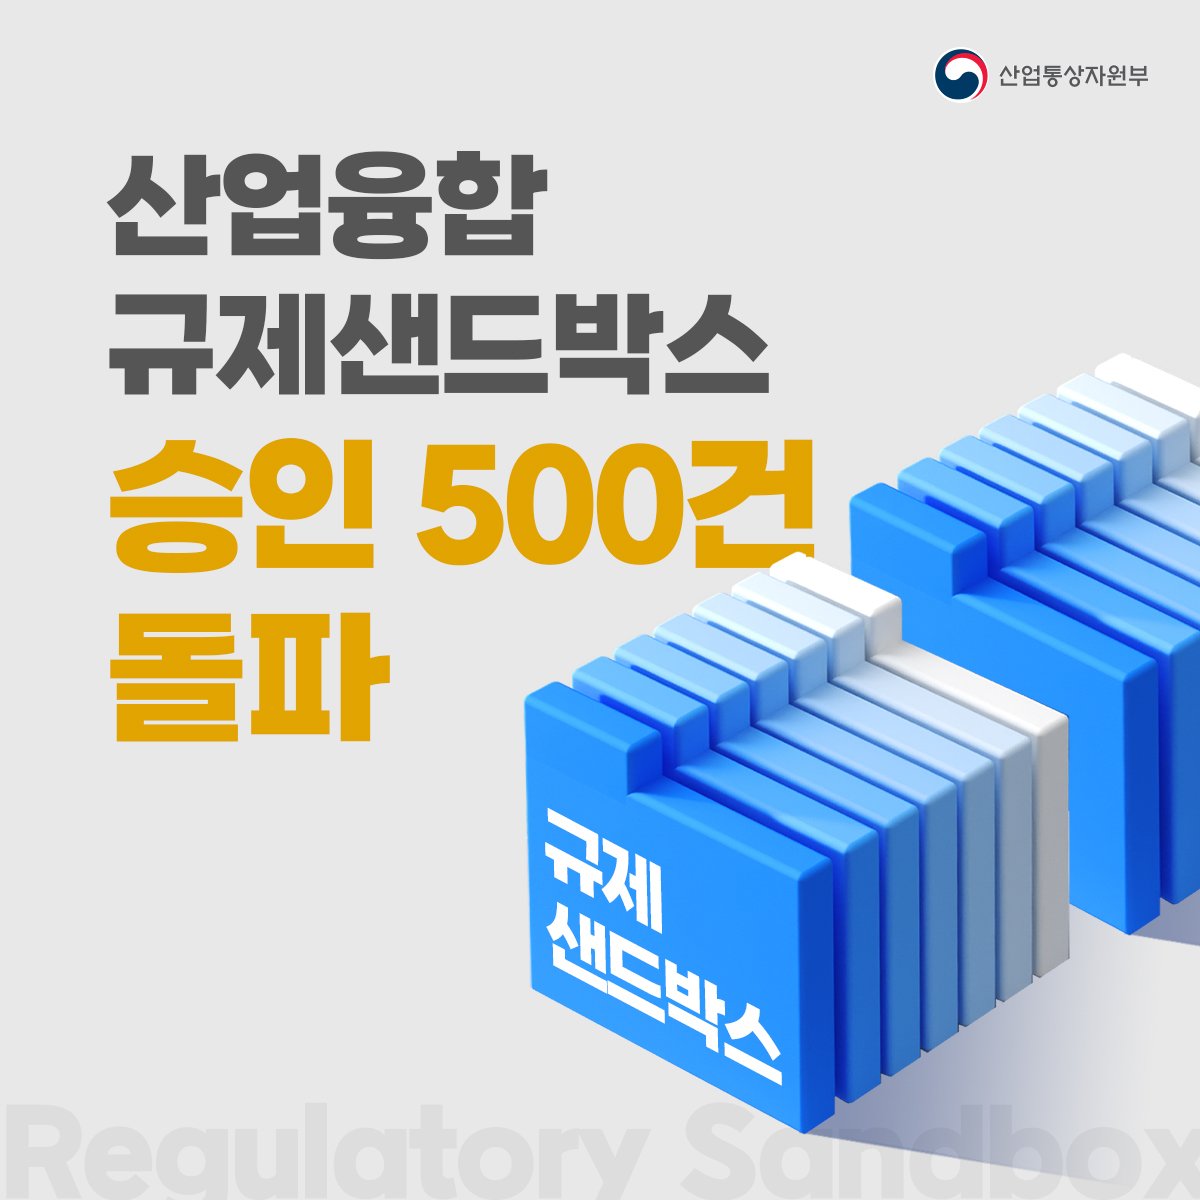 산업융합 규제샌드박스 승인 500건 돌파!!